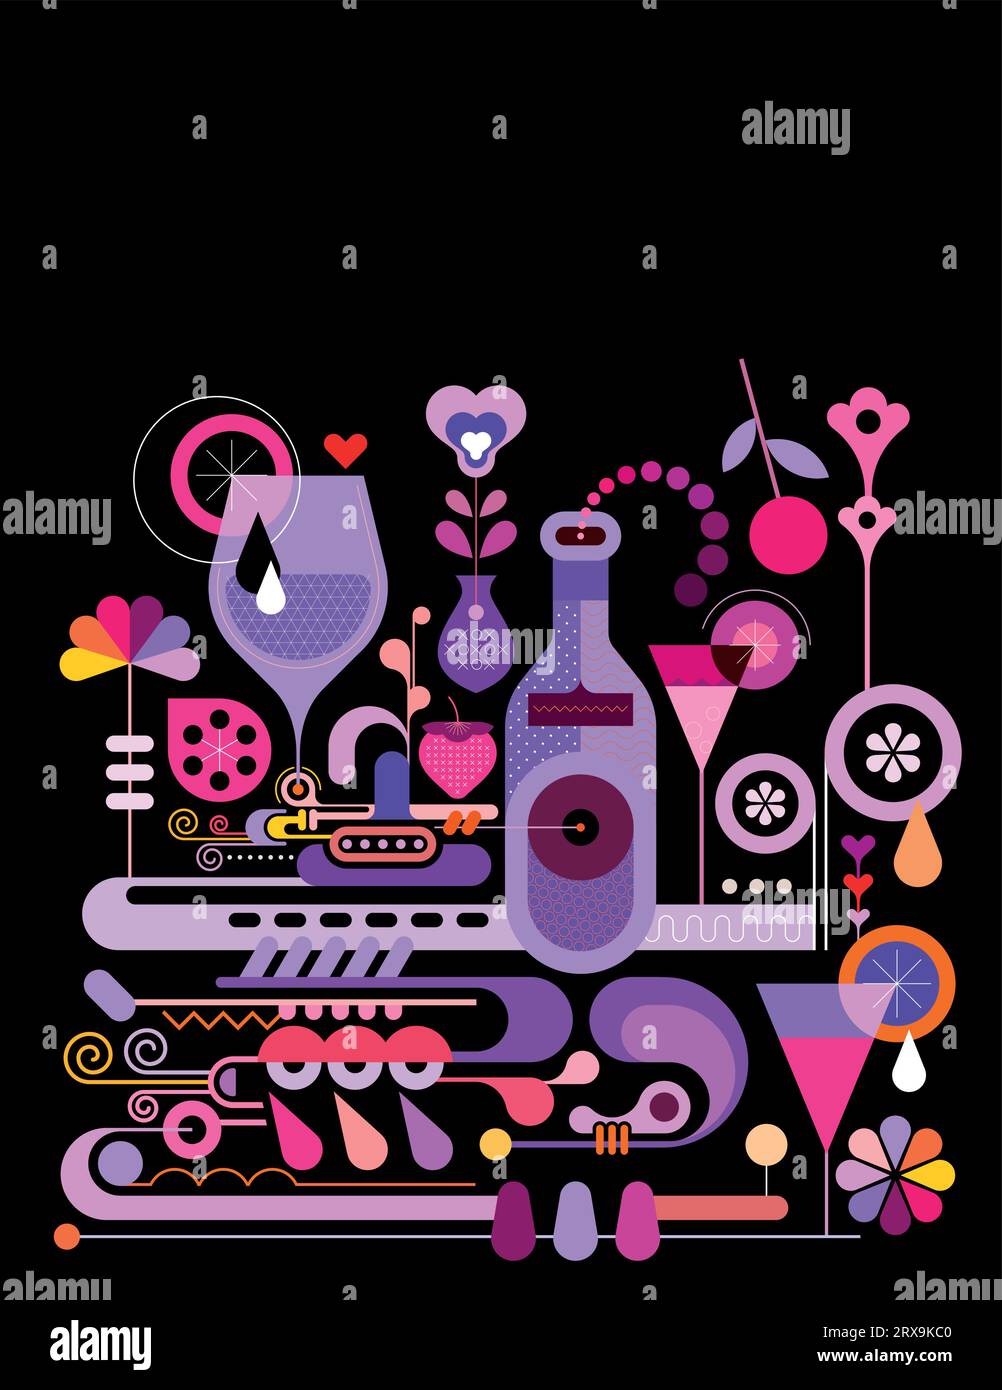 Farbdesign isoliert auf einem schwarzen Hintergrund Cocktail Herstellung Vektor Illustration. Kreative Mischung aus Cocktailgläsern mit Fruchtscheiben, Flaschen Alkohol Stock Vektor